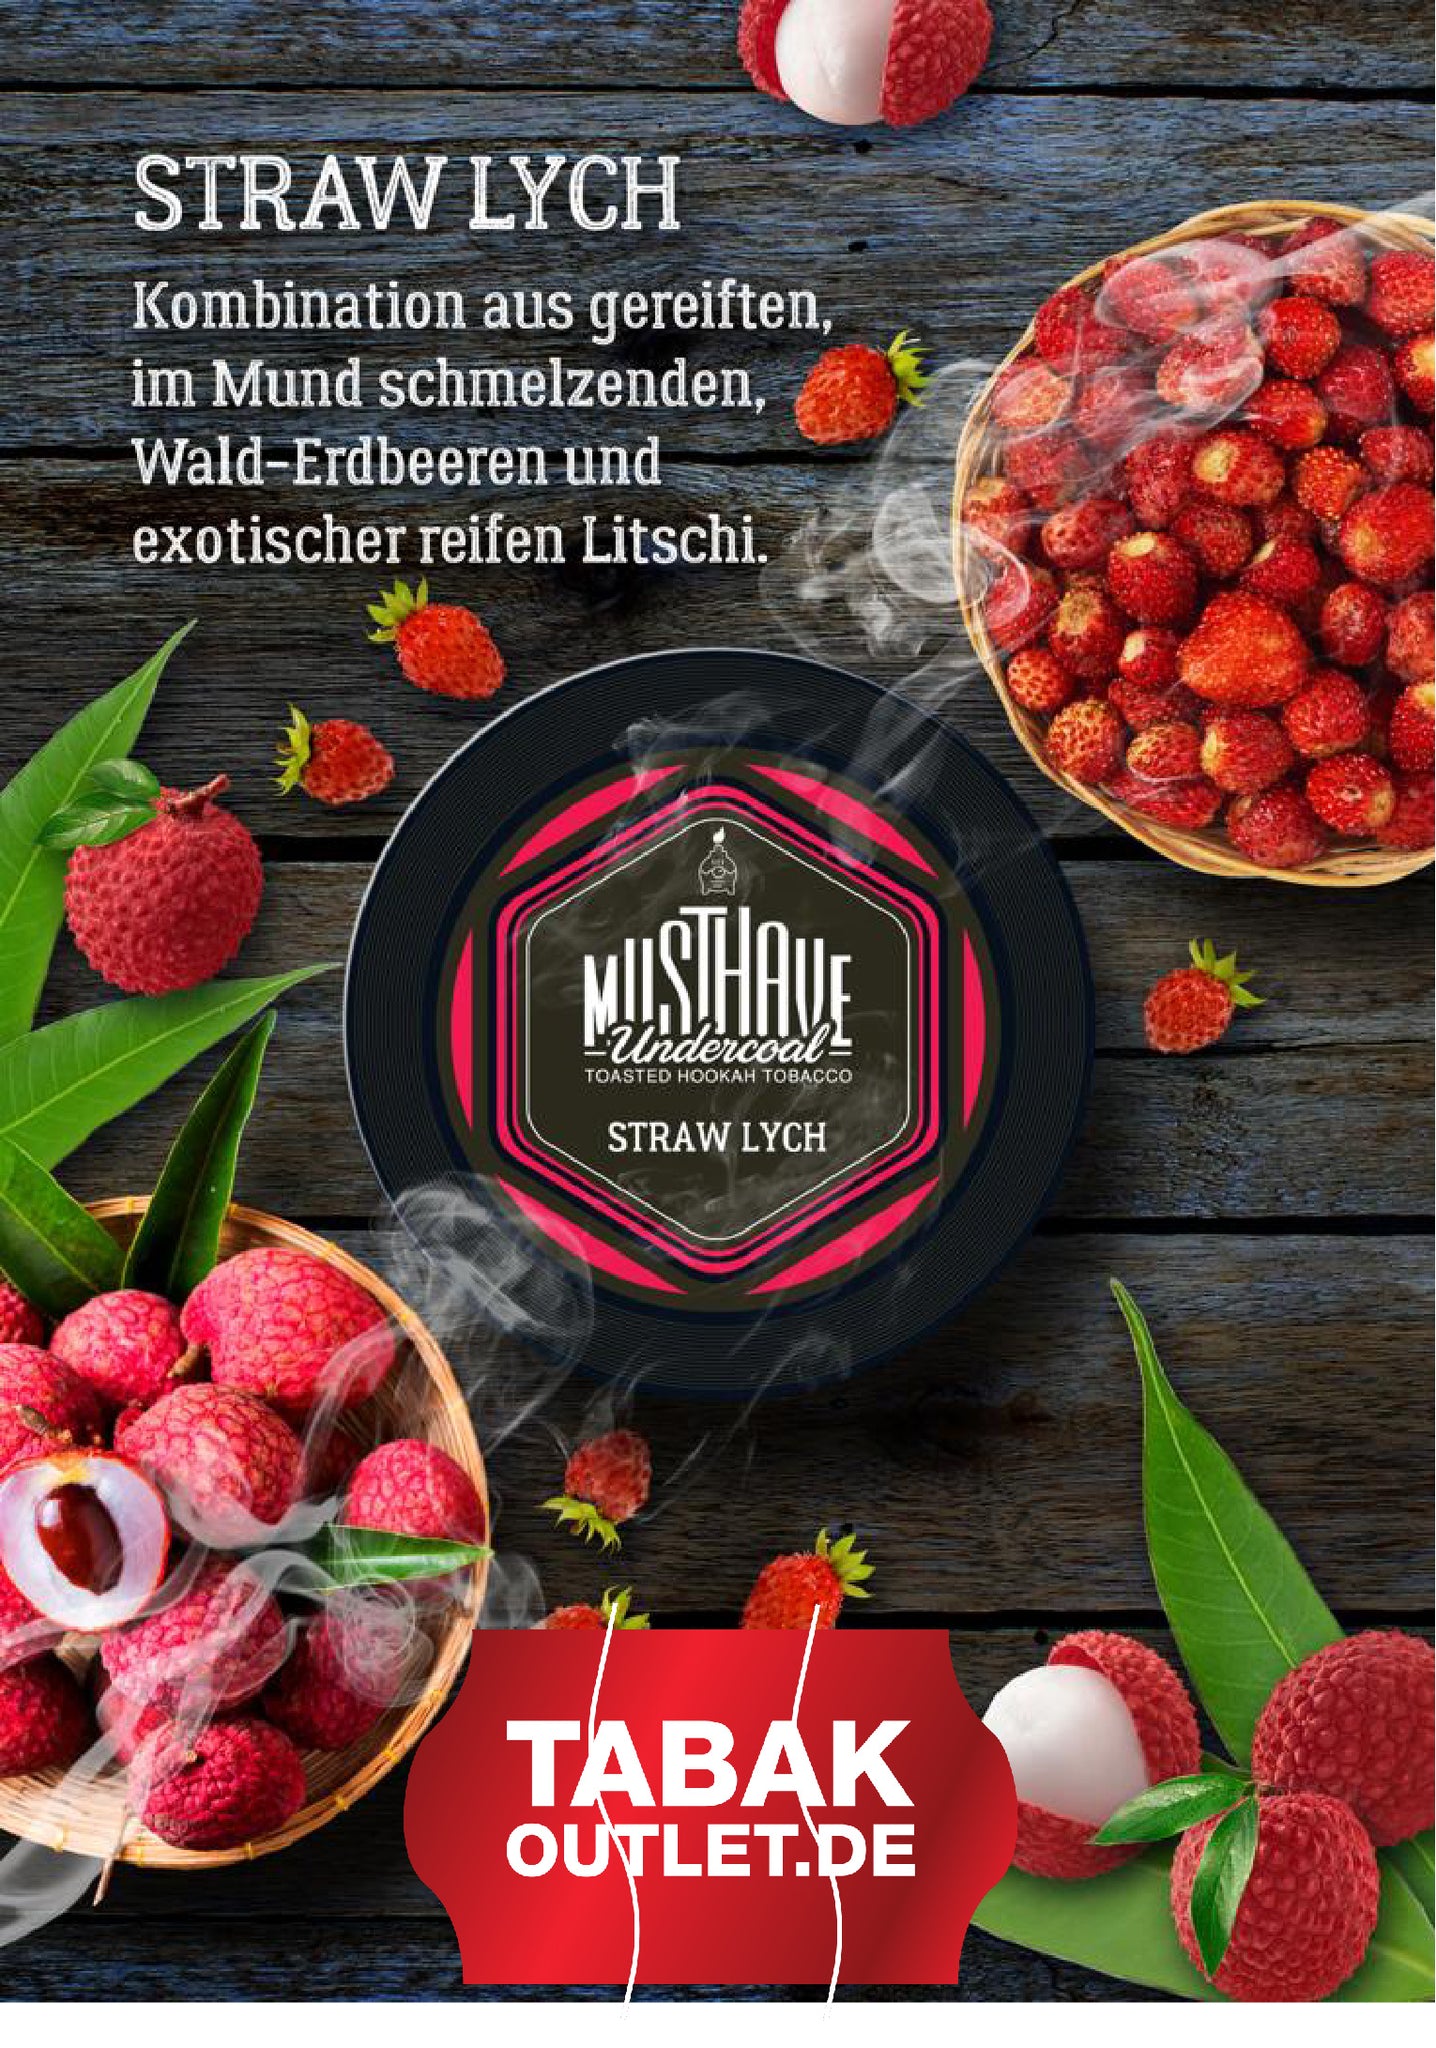 Musthave Straw LYCH - Wald-Erdbeeren und exot. Litschi 25g Dose